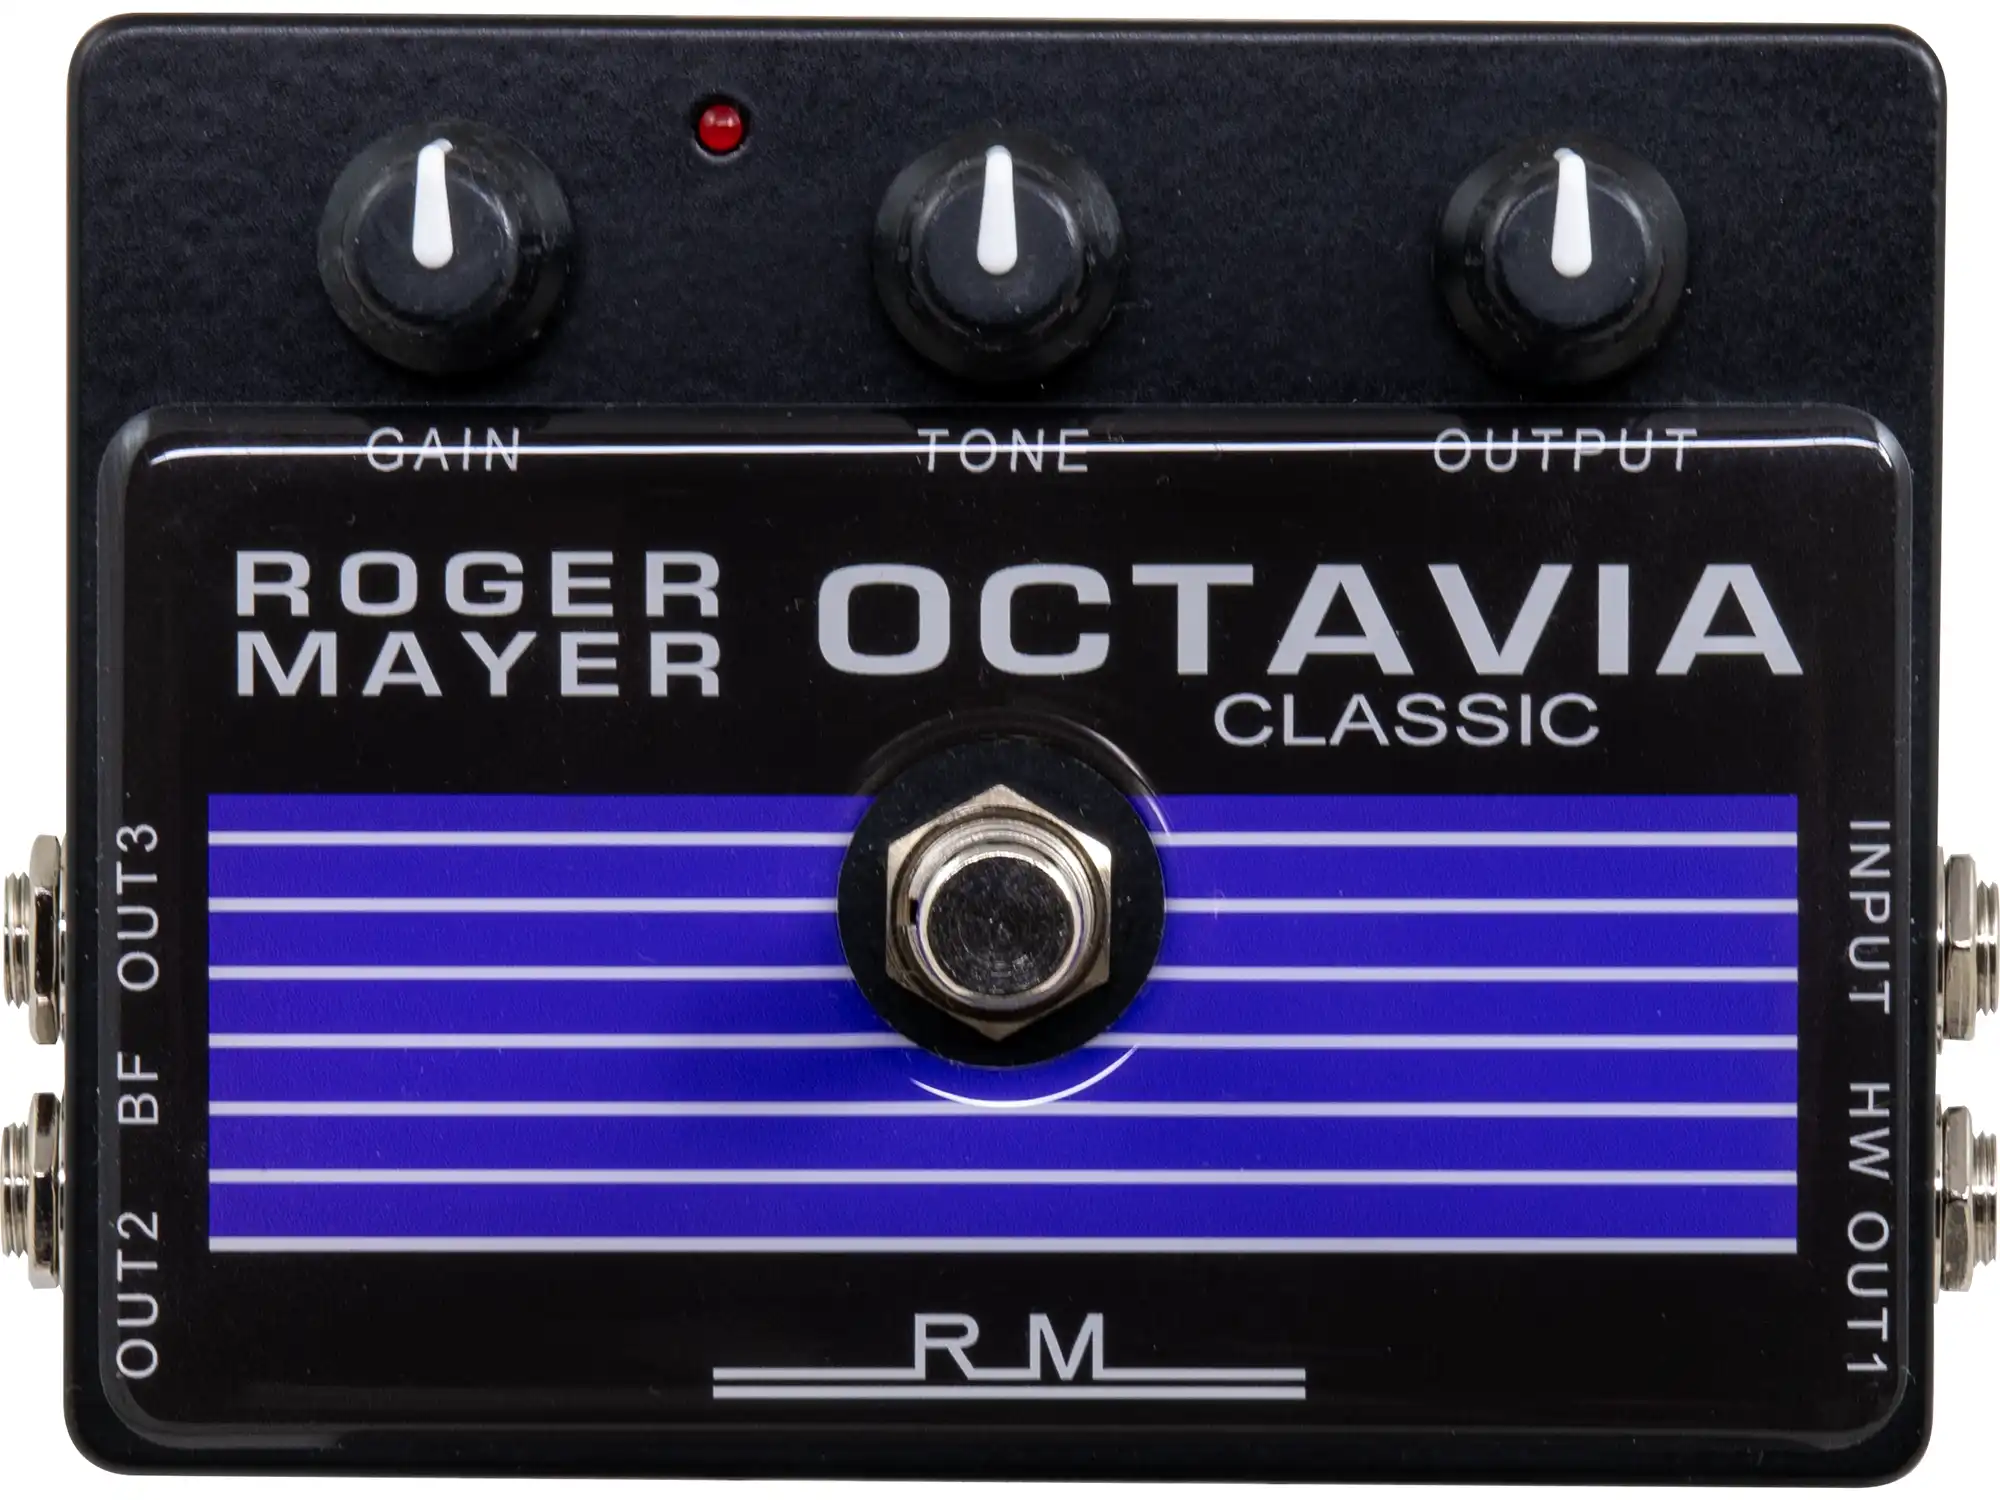 Octavia Classic Roger Mayer | オクタヴィア・クラシック ロジャー